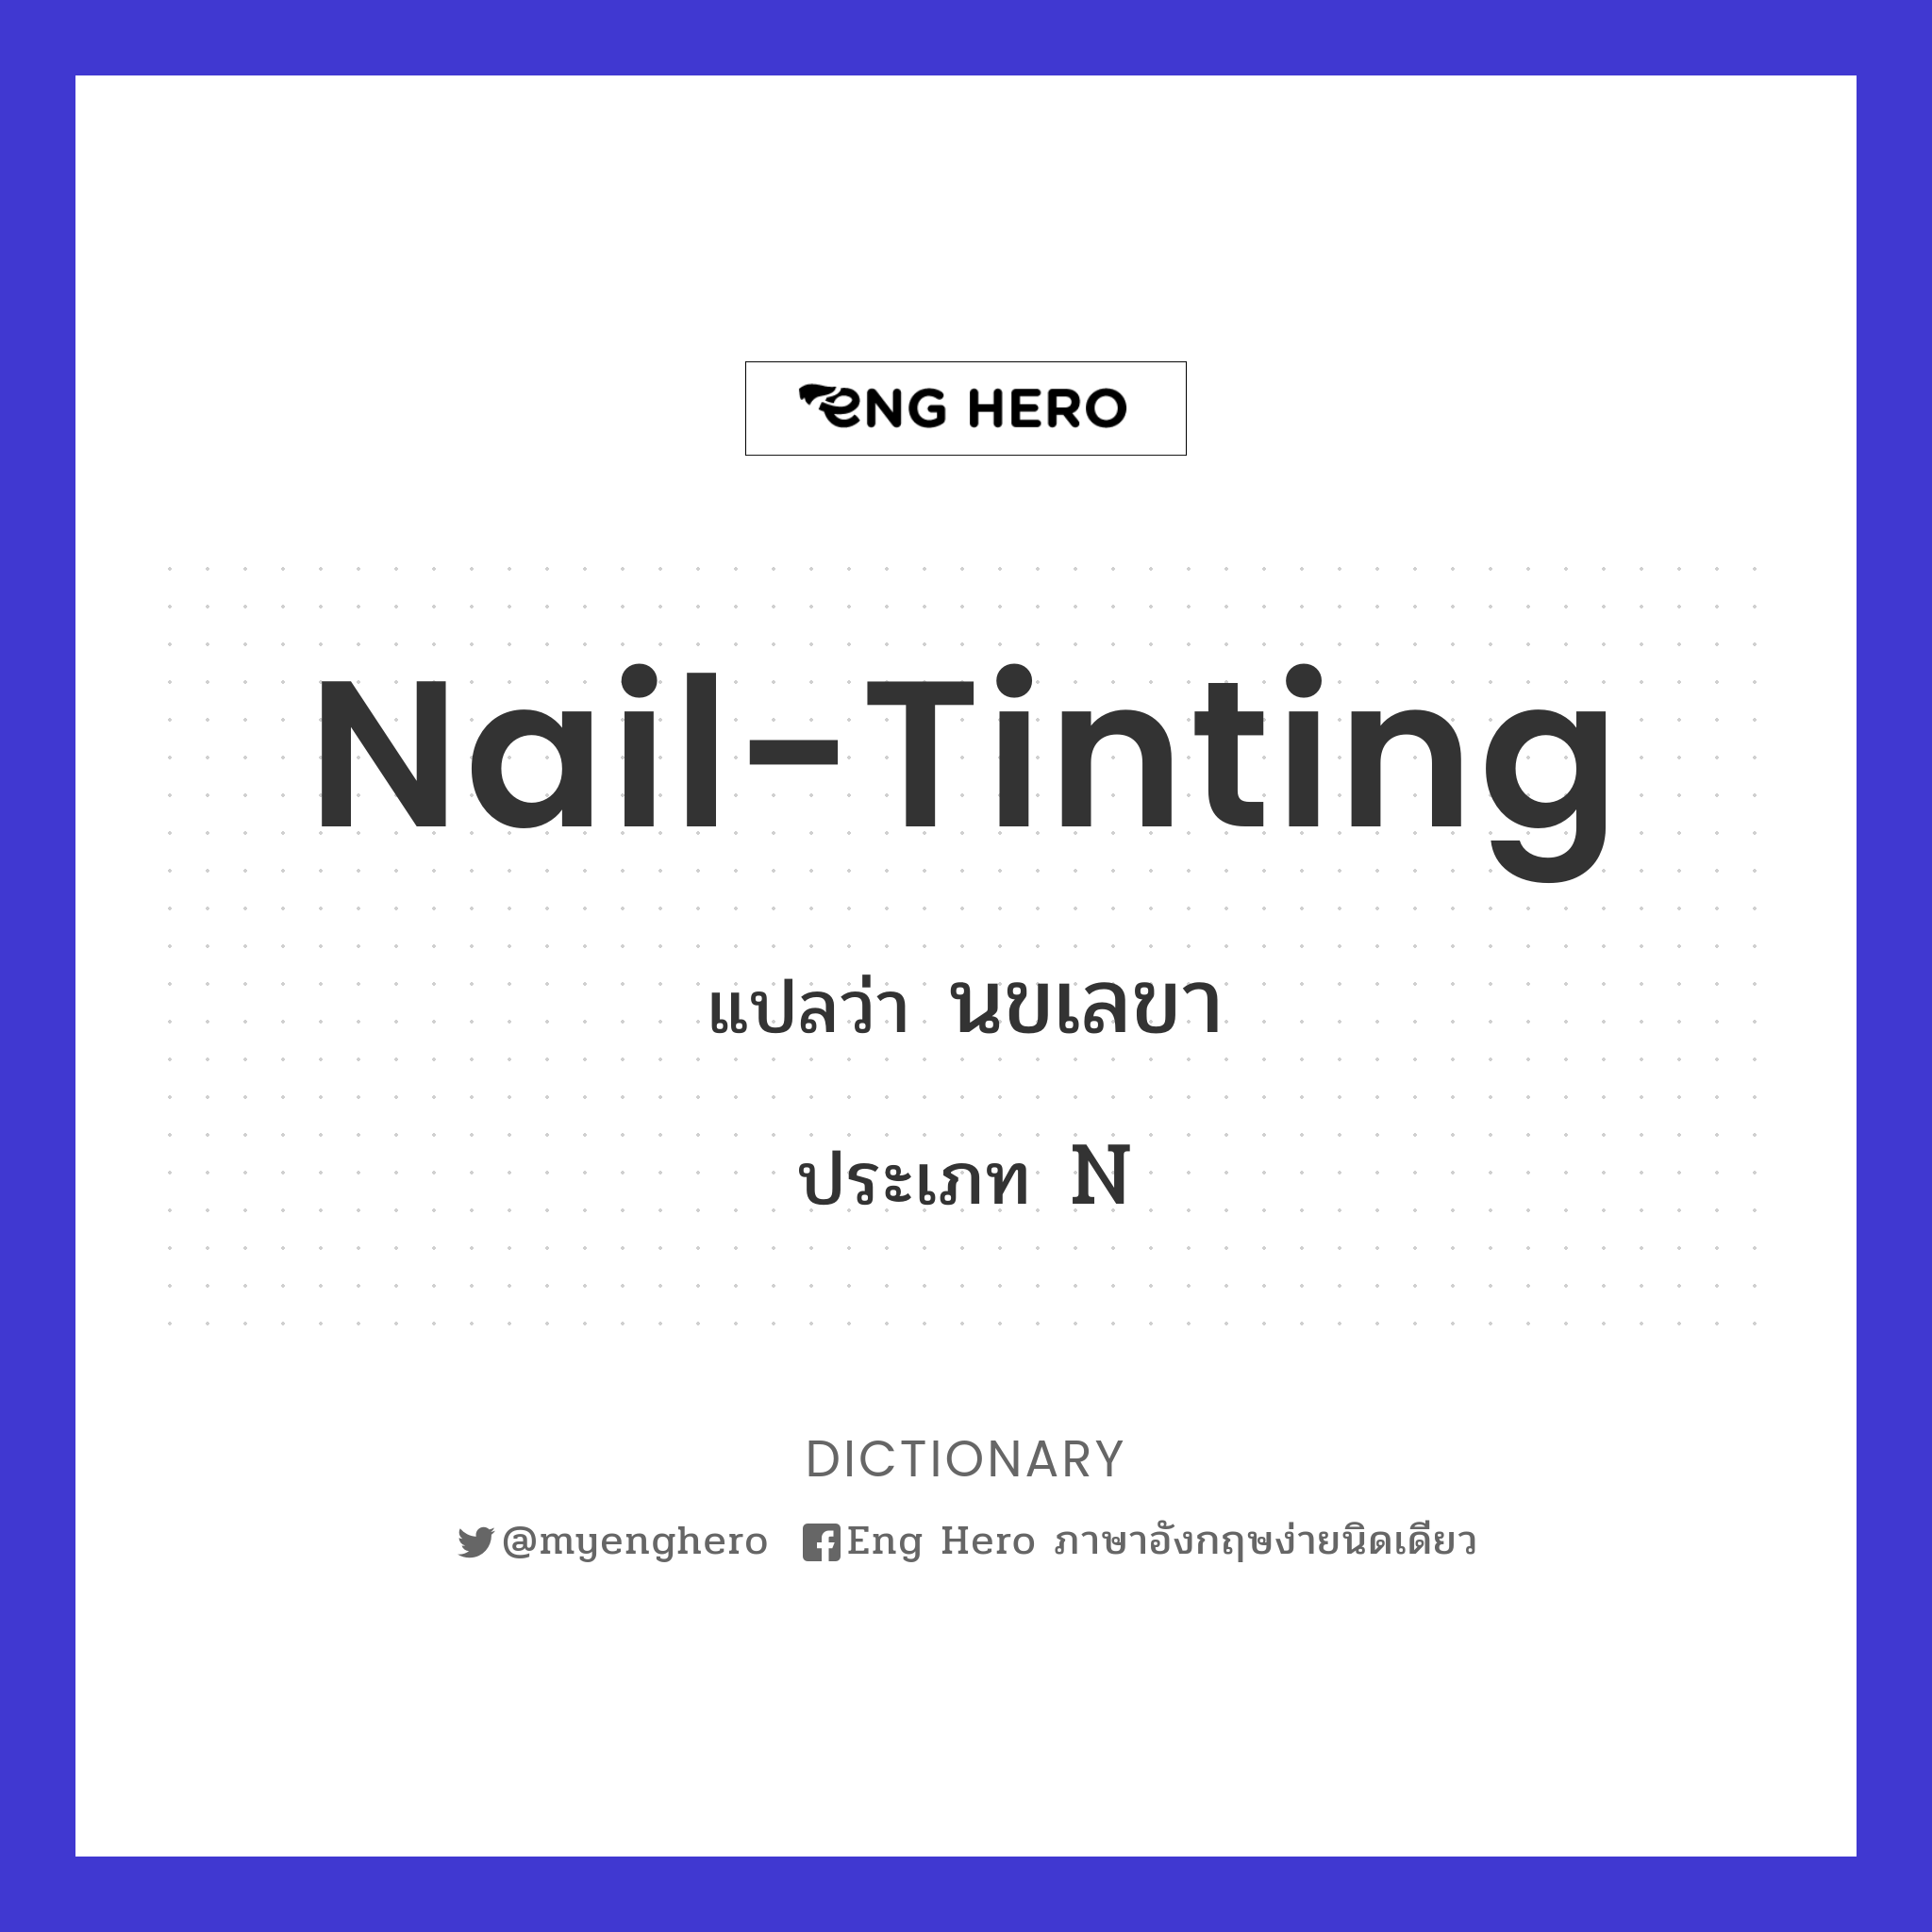 nail-tinting